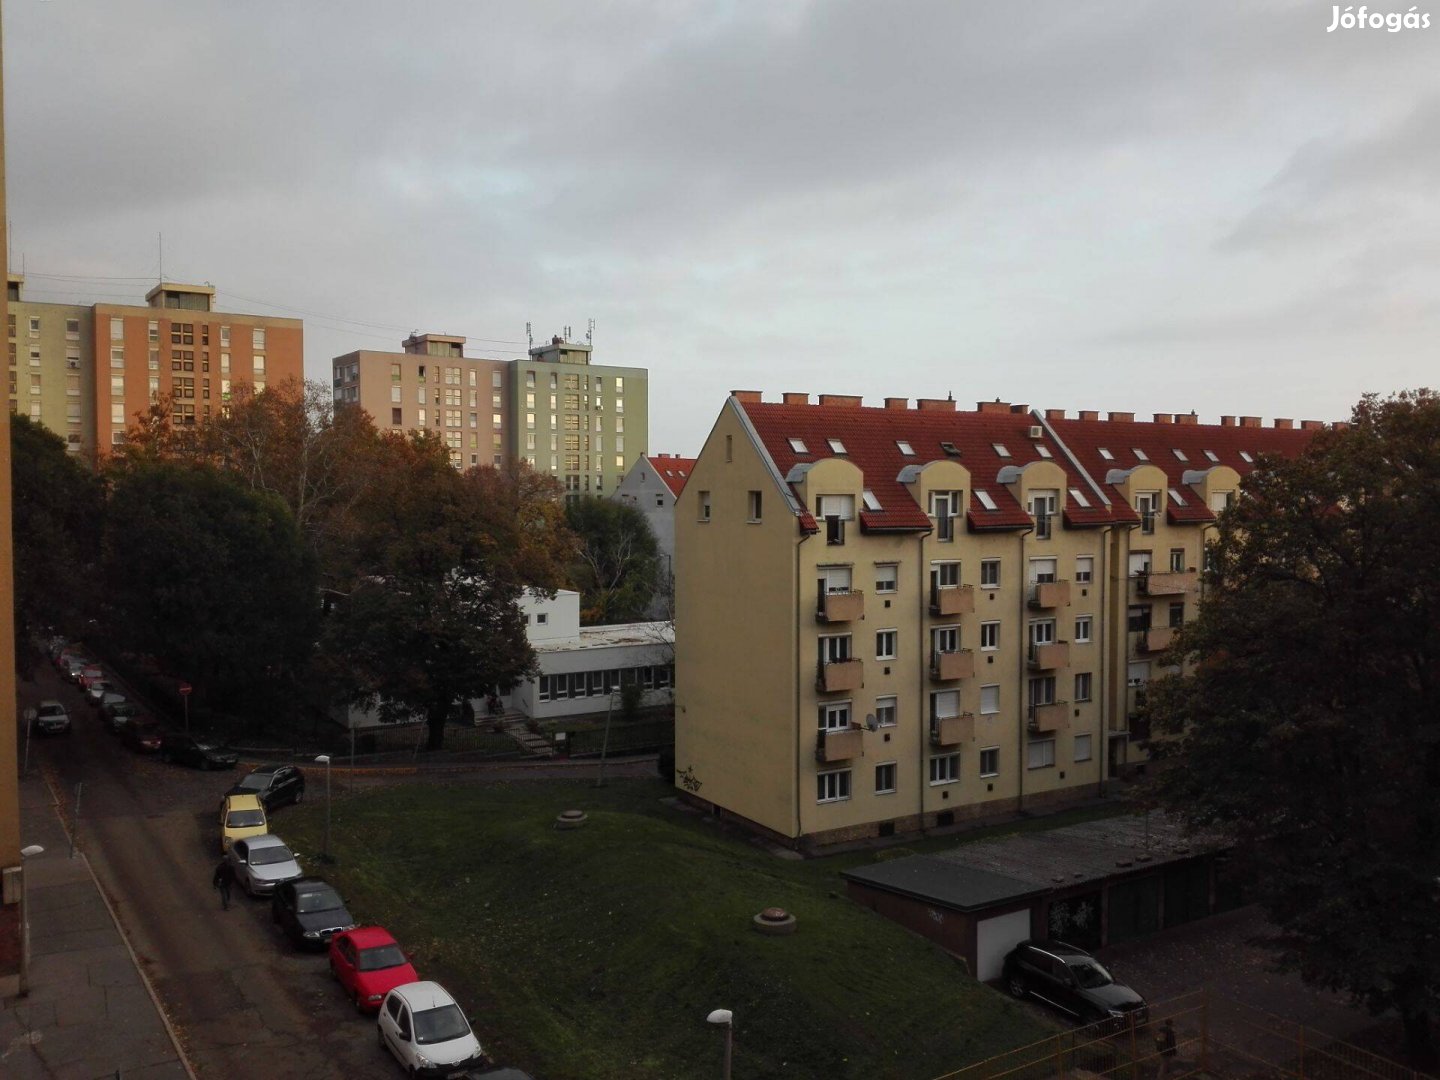 Eladó Pécs belváros központi részén 54m2 panorámás lakás